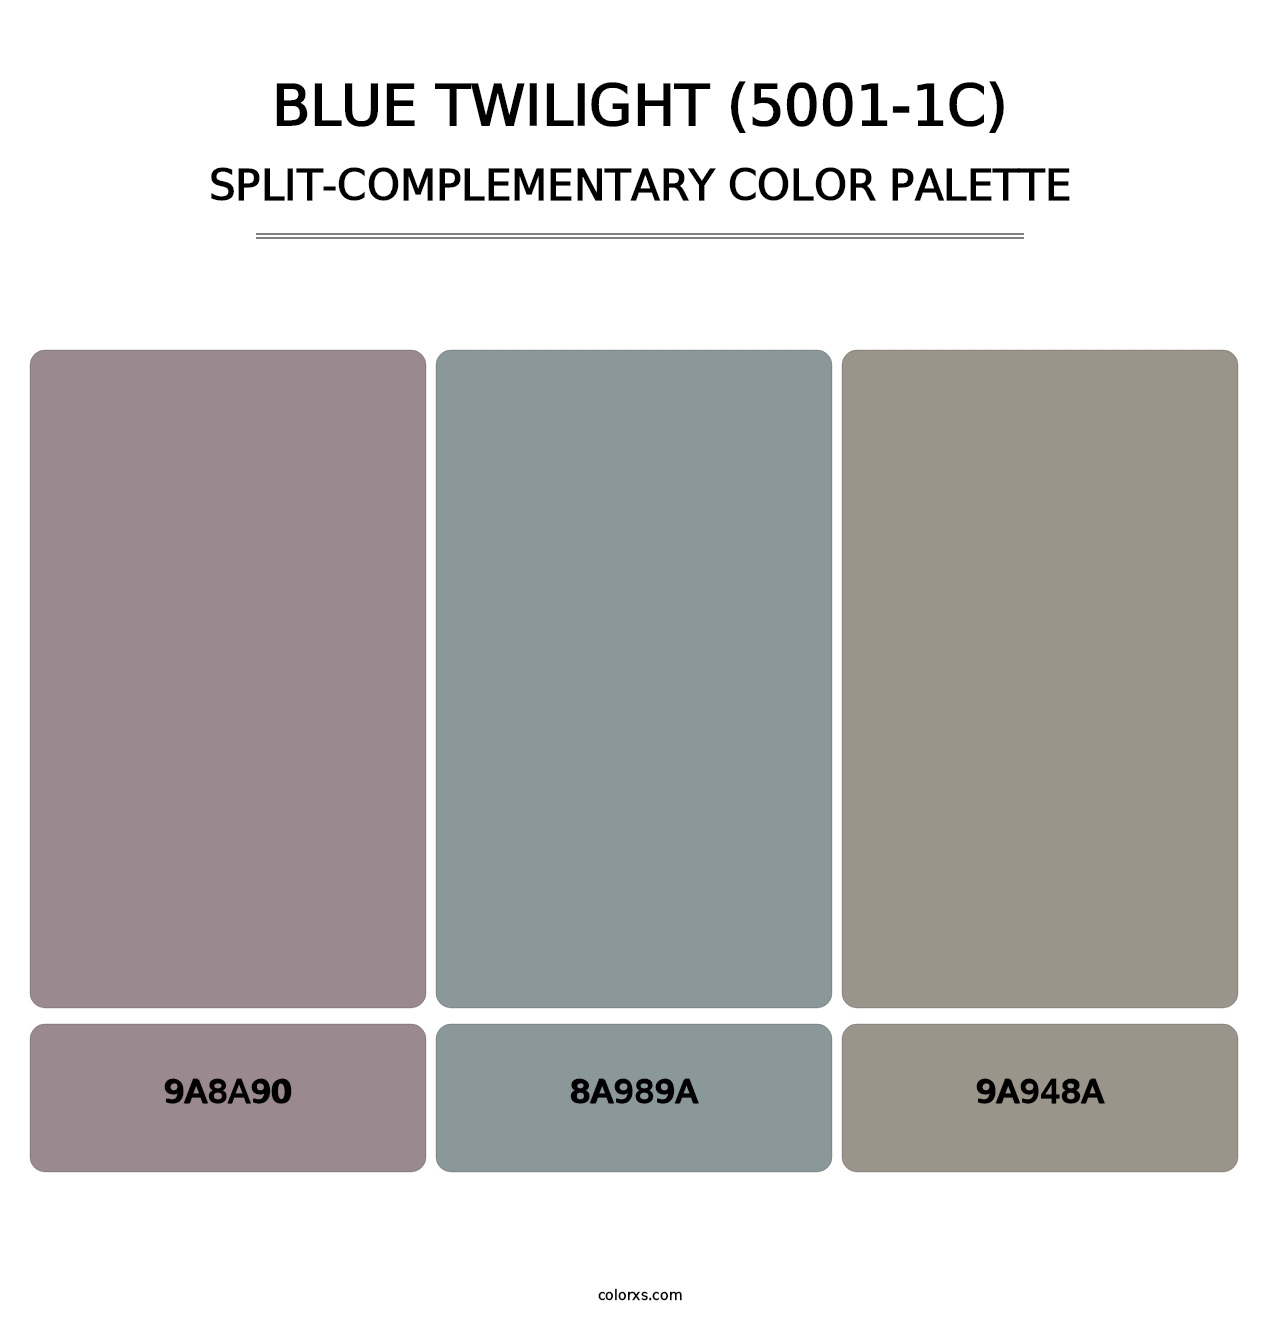 Blue Twilight (5001-1C) - Split-Complementary Color Palette